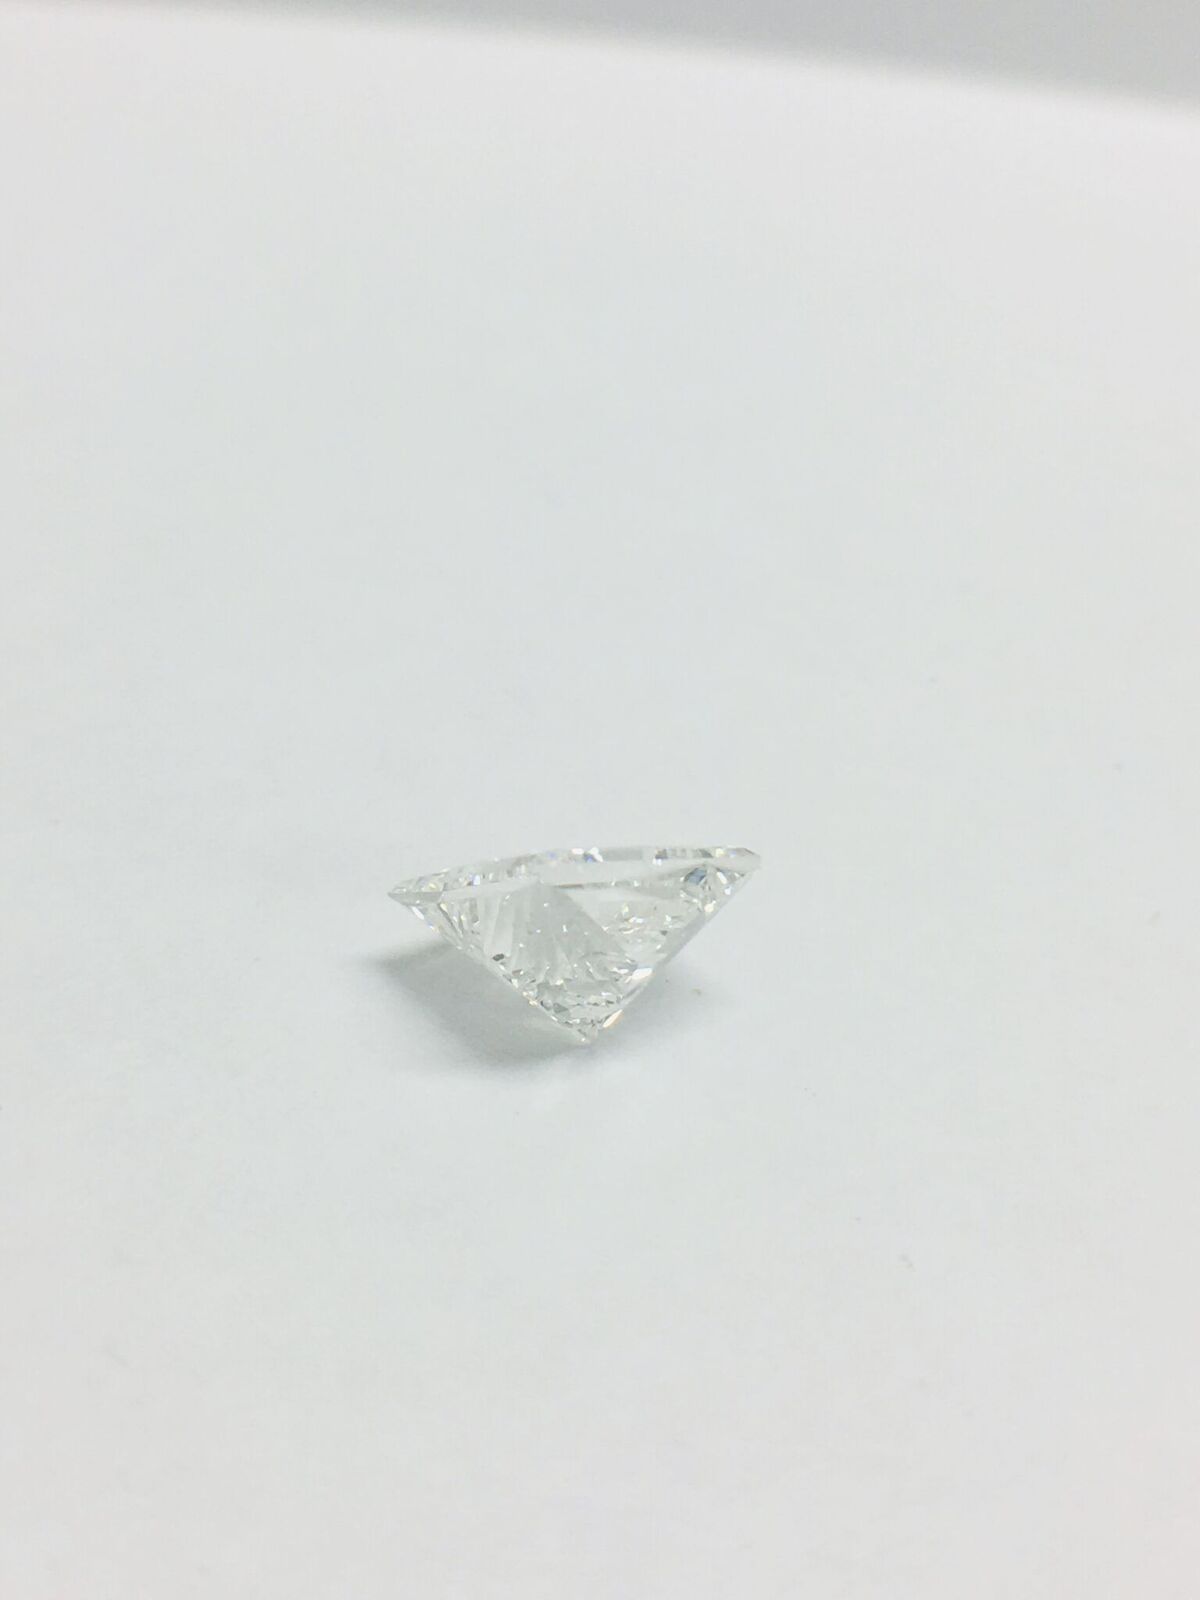 1.95ct Princess cut Diamond - Image 19 of 42